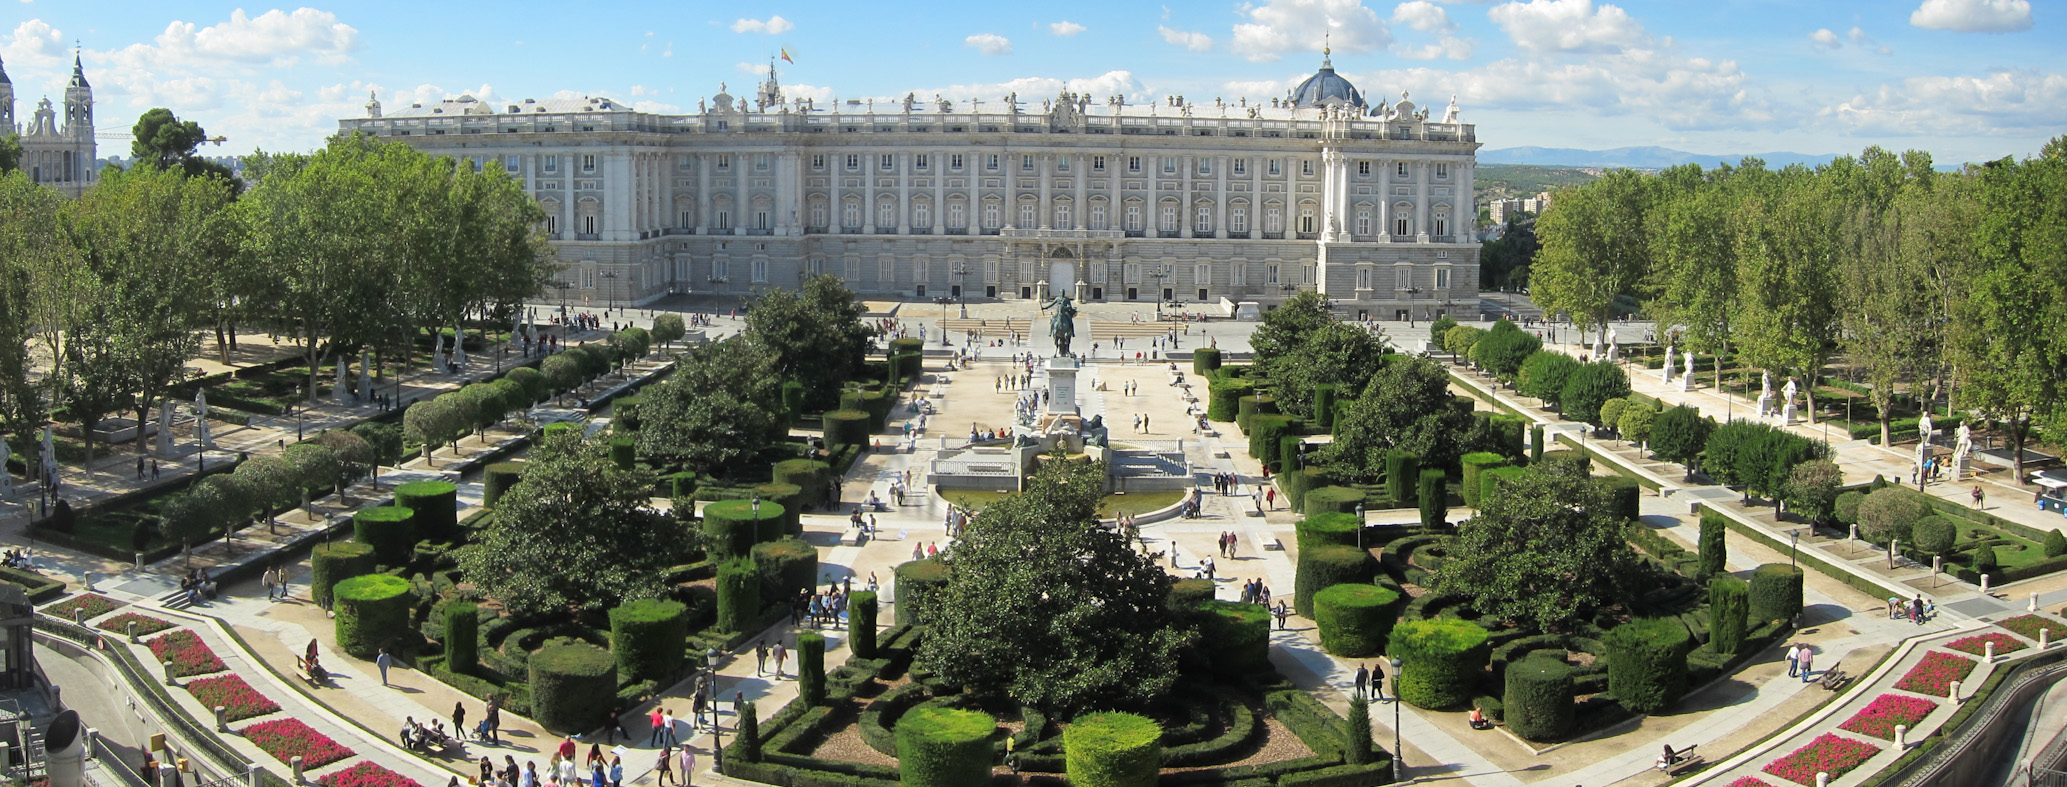 Vistas del Palacio Real de Madrid desde la Plaza de Oriente